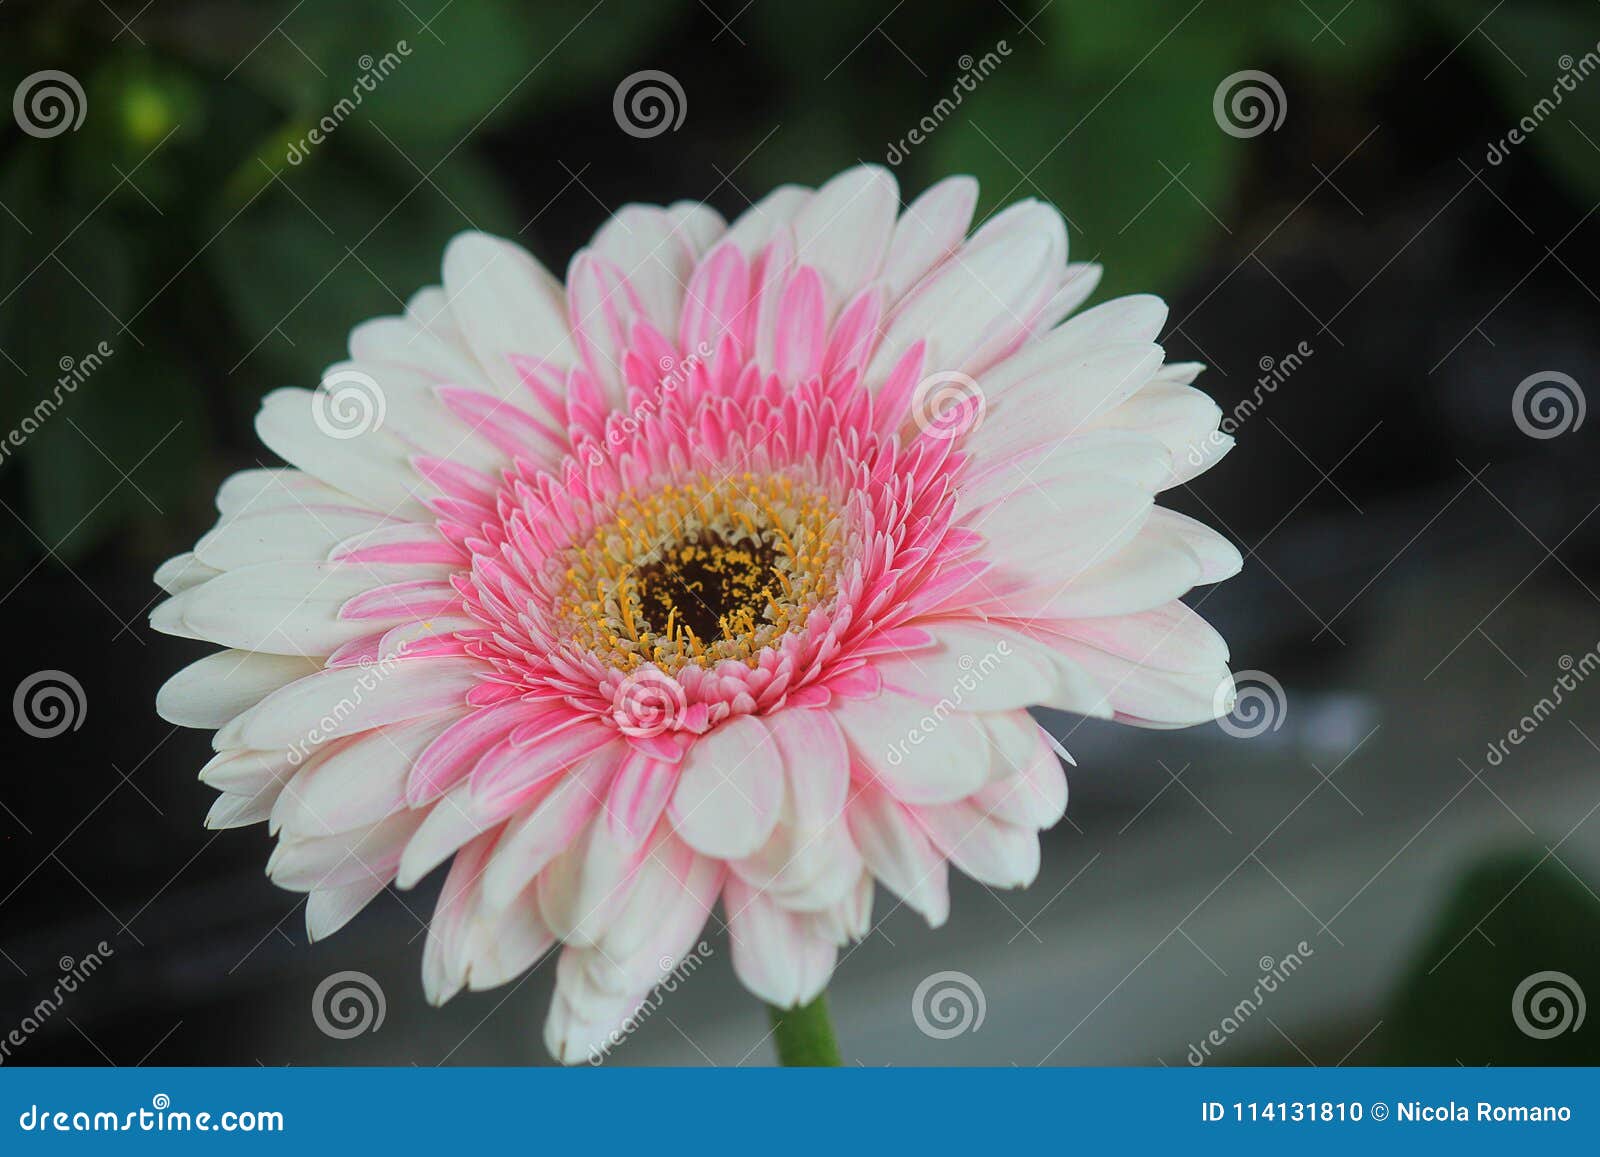 Gerbera blanco y rosado foto de archivo. Imagen de cubo - 114131810